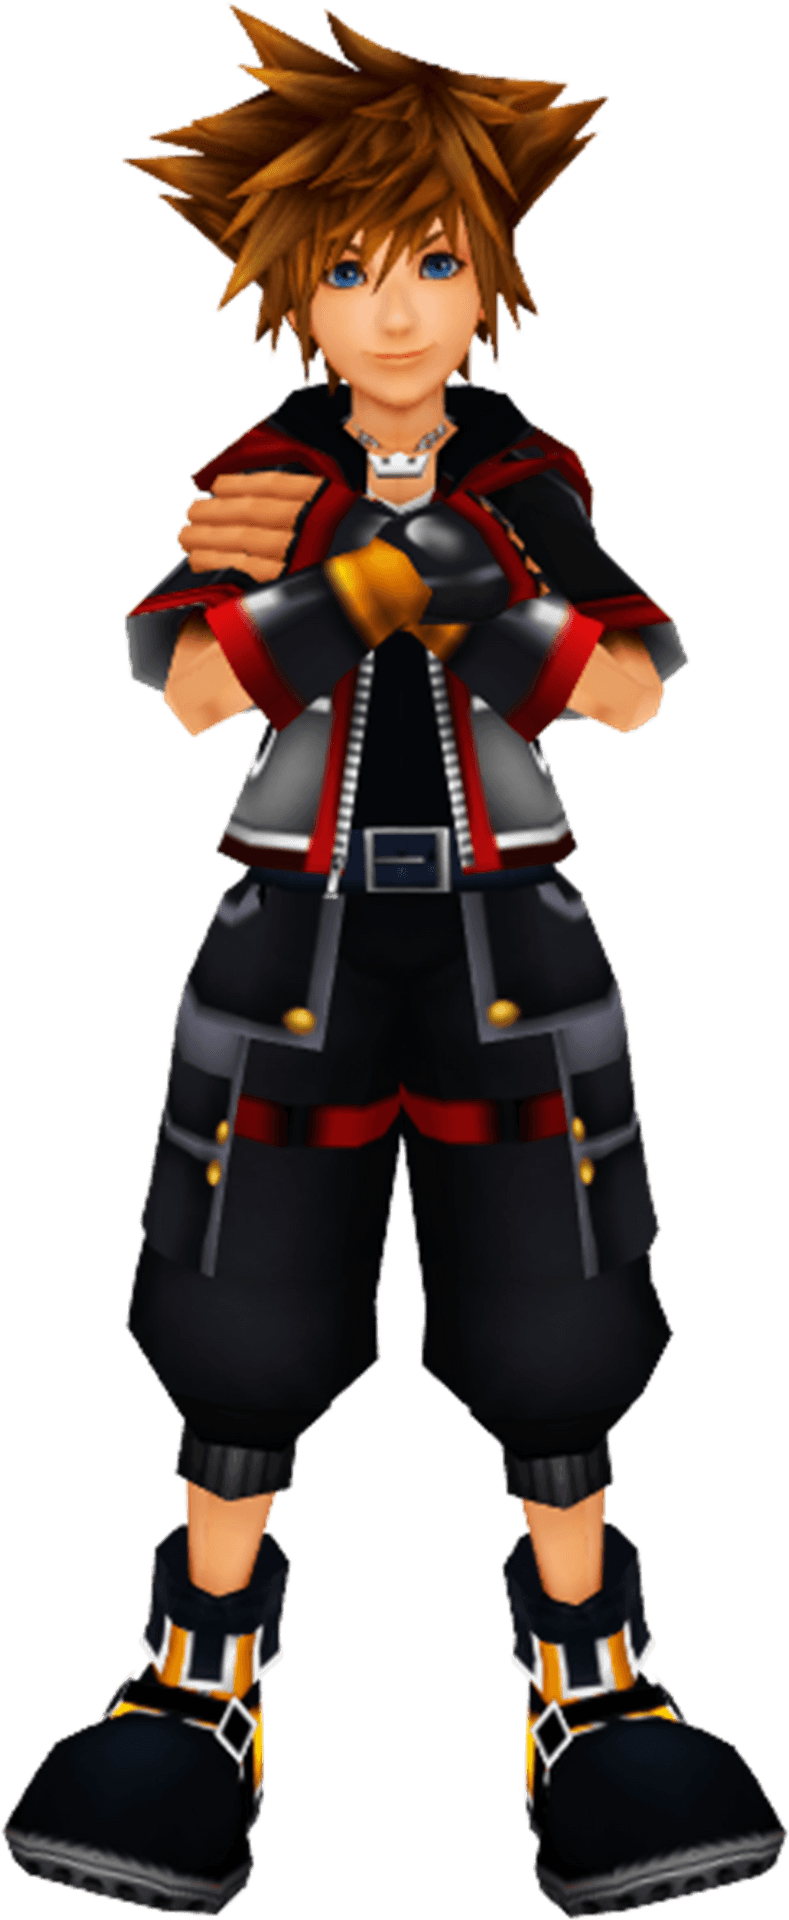 Kingdom Hearts_ Main Character Pose.png PNG image